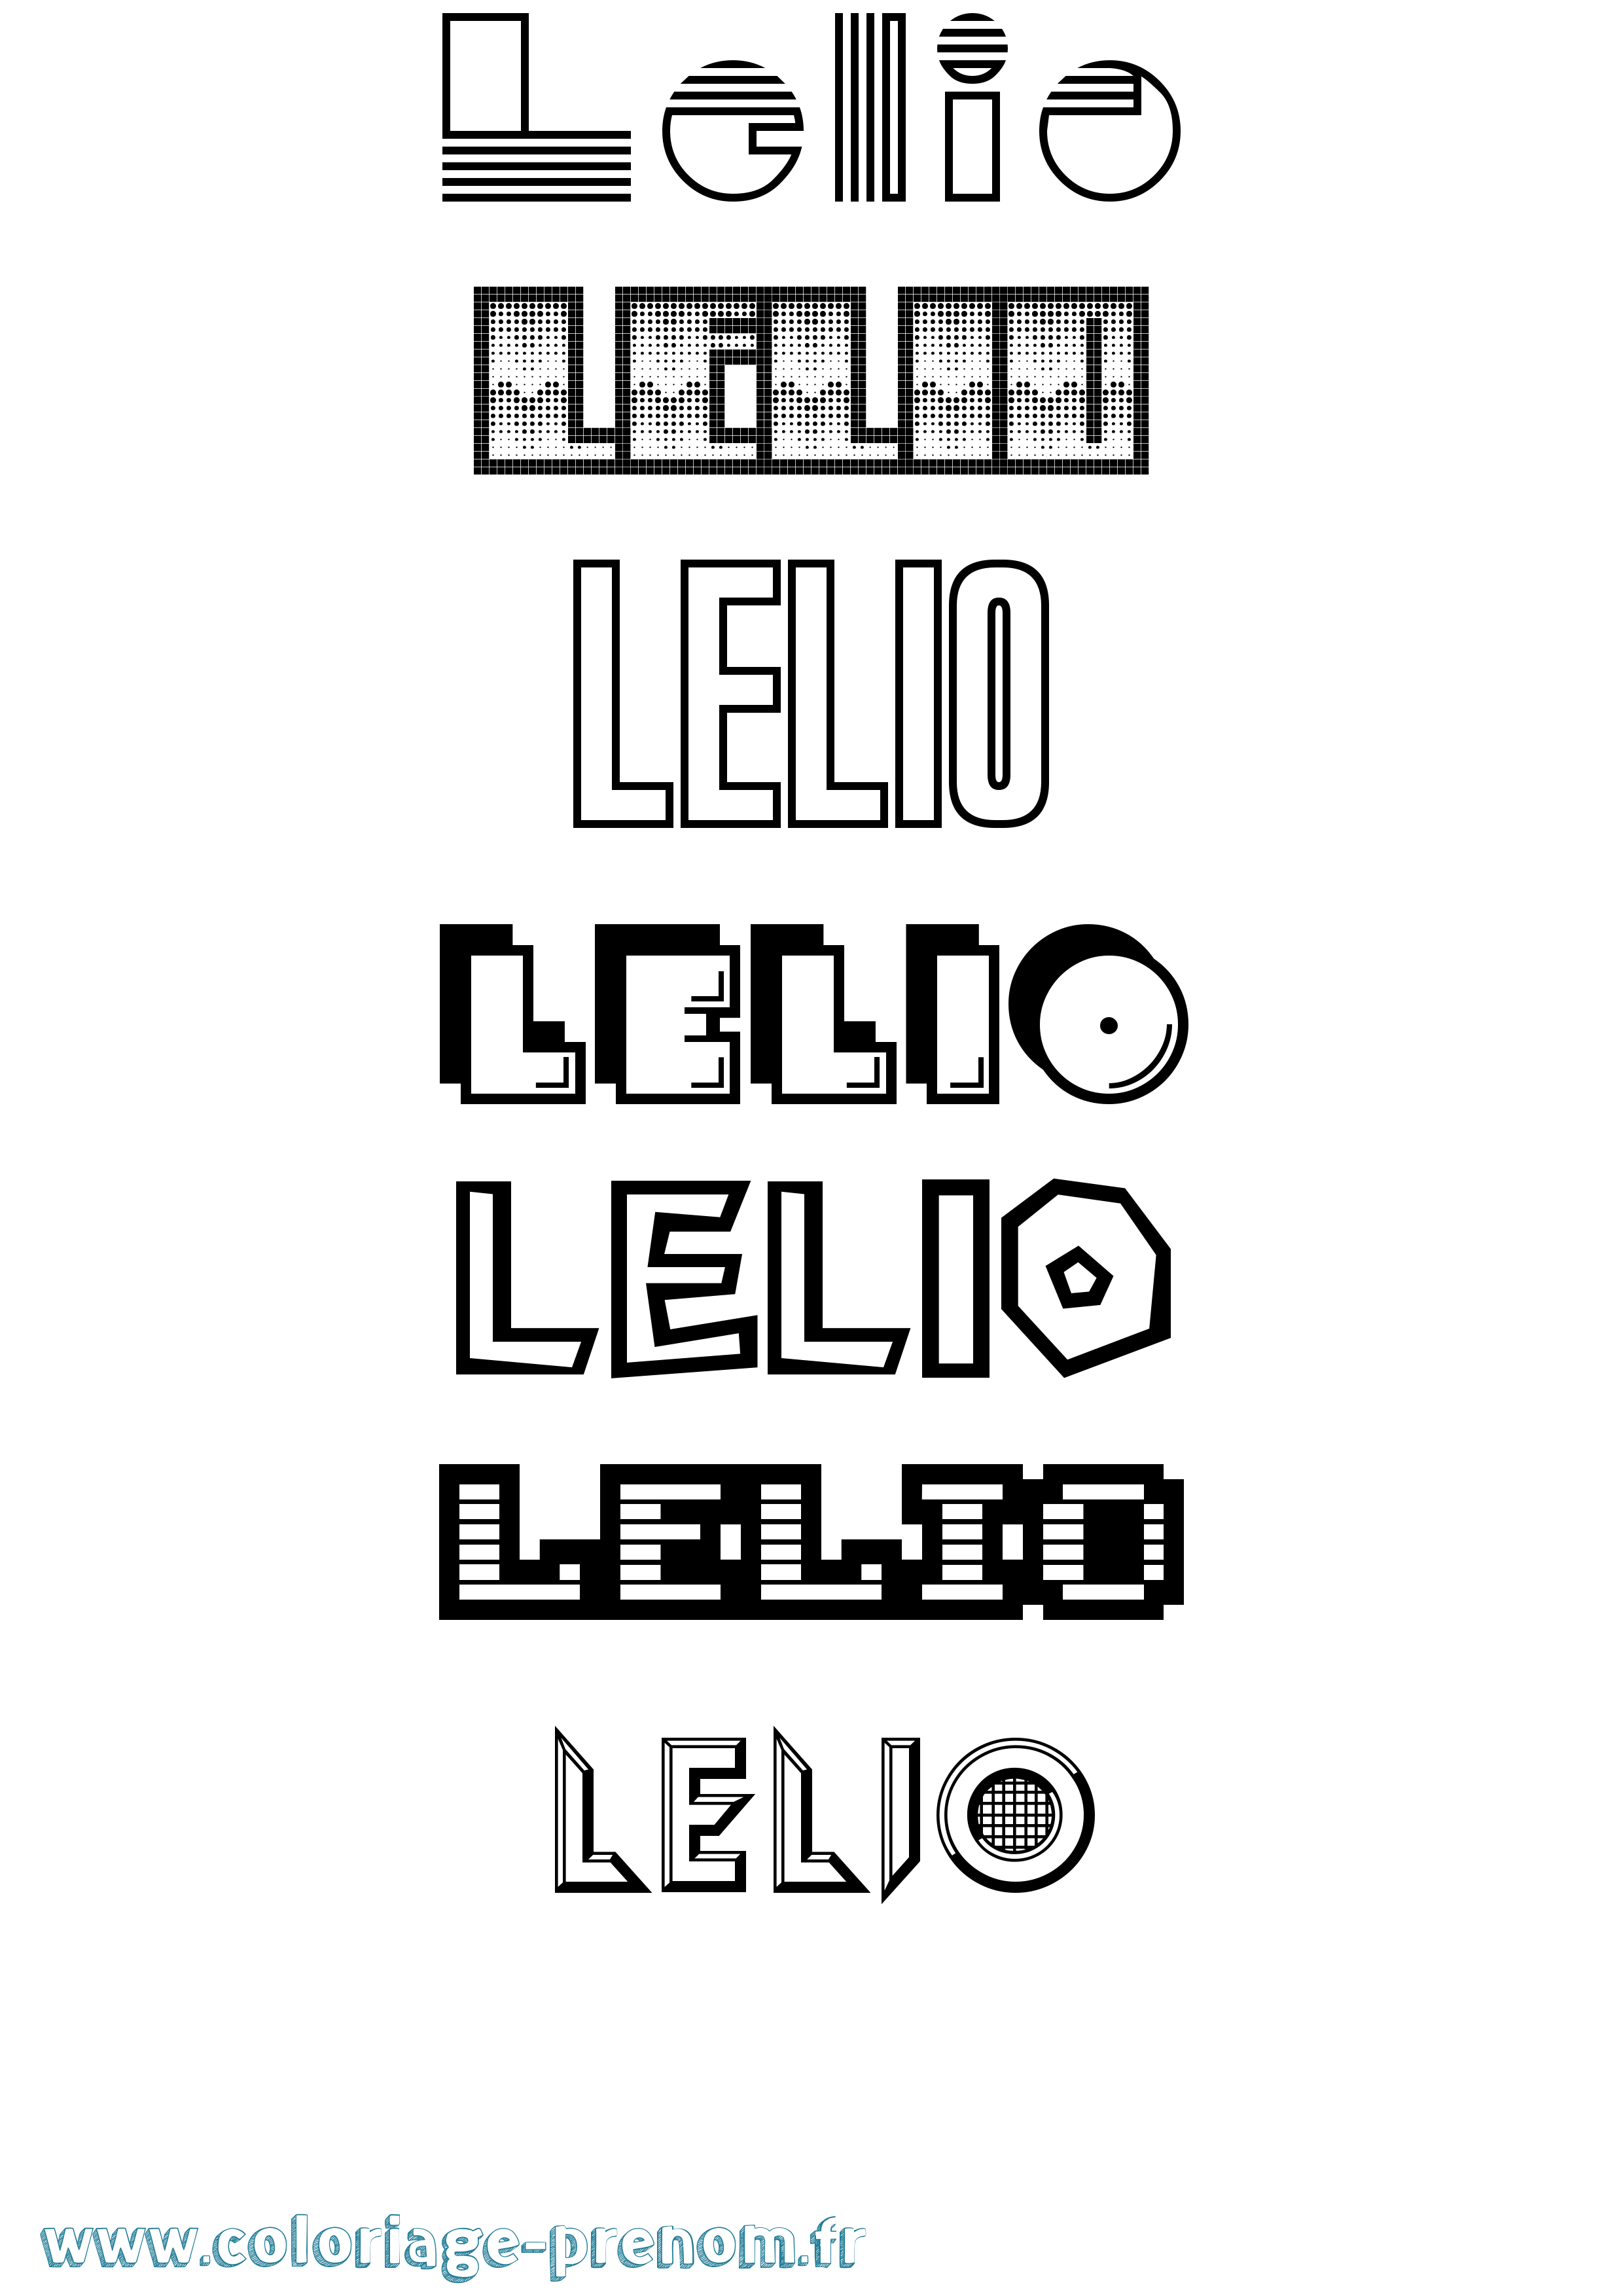 Coloriage prénom Lelio Jeux Vidéos